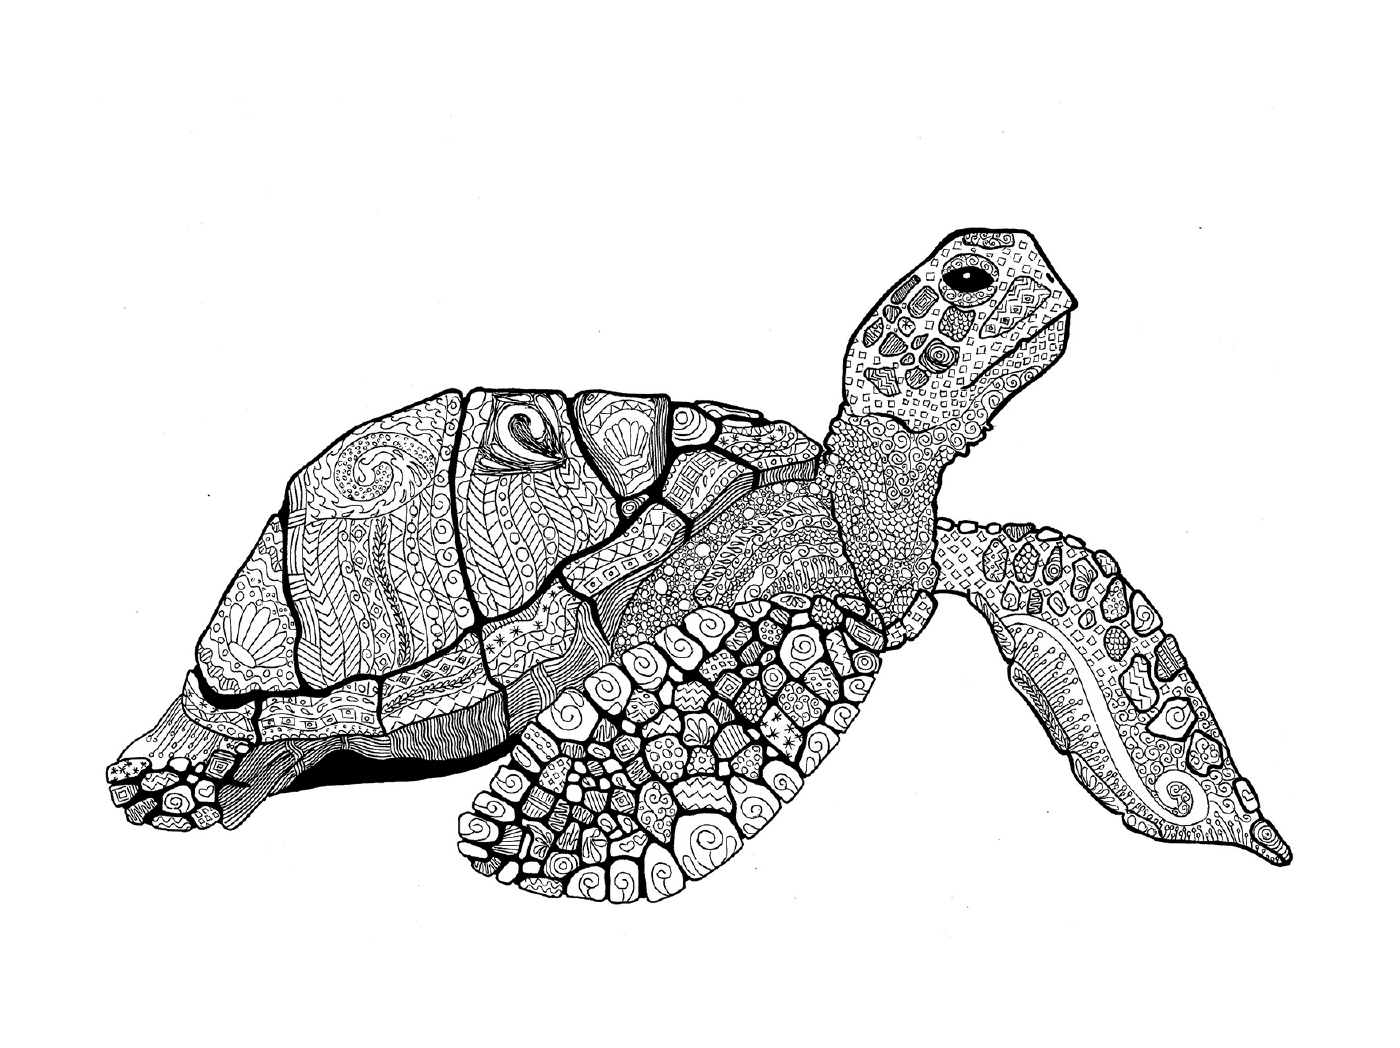  海龟海龟 